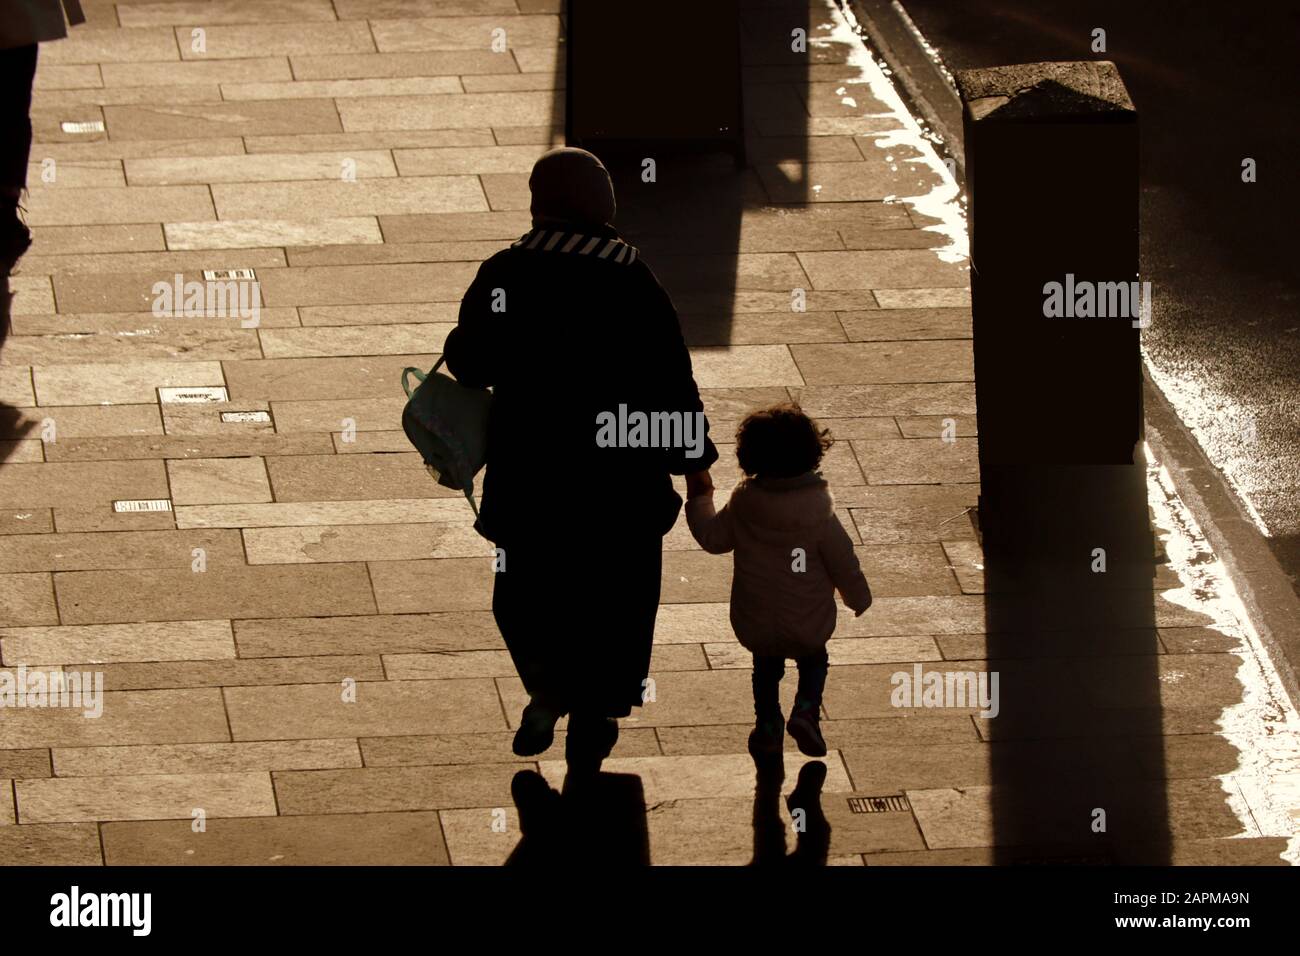 Extranjeros, inmigrantes o solicitantes de asilo en las calles del Reino Unido. Madre de familia con niño caminando en silueta Foto de stock